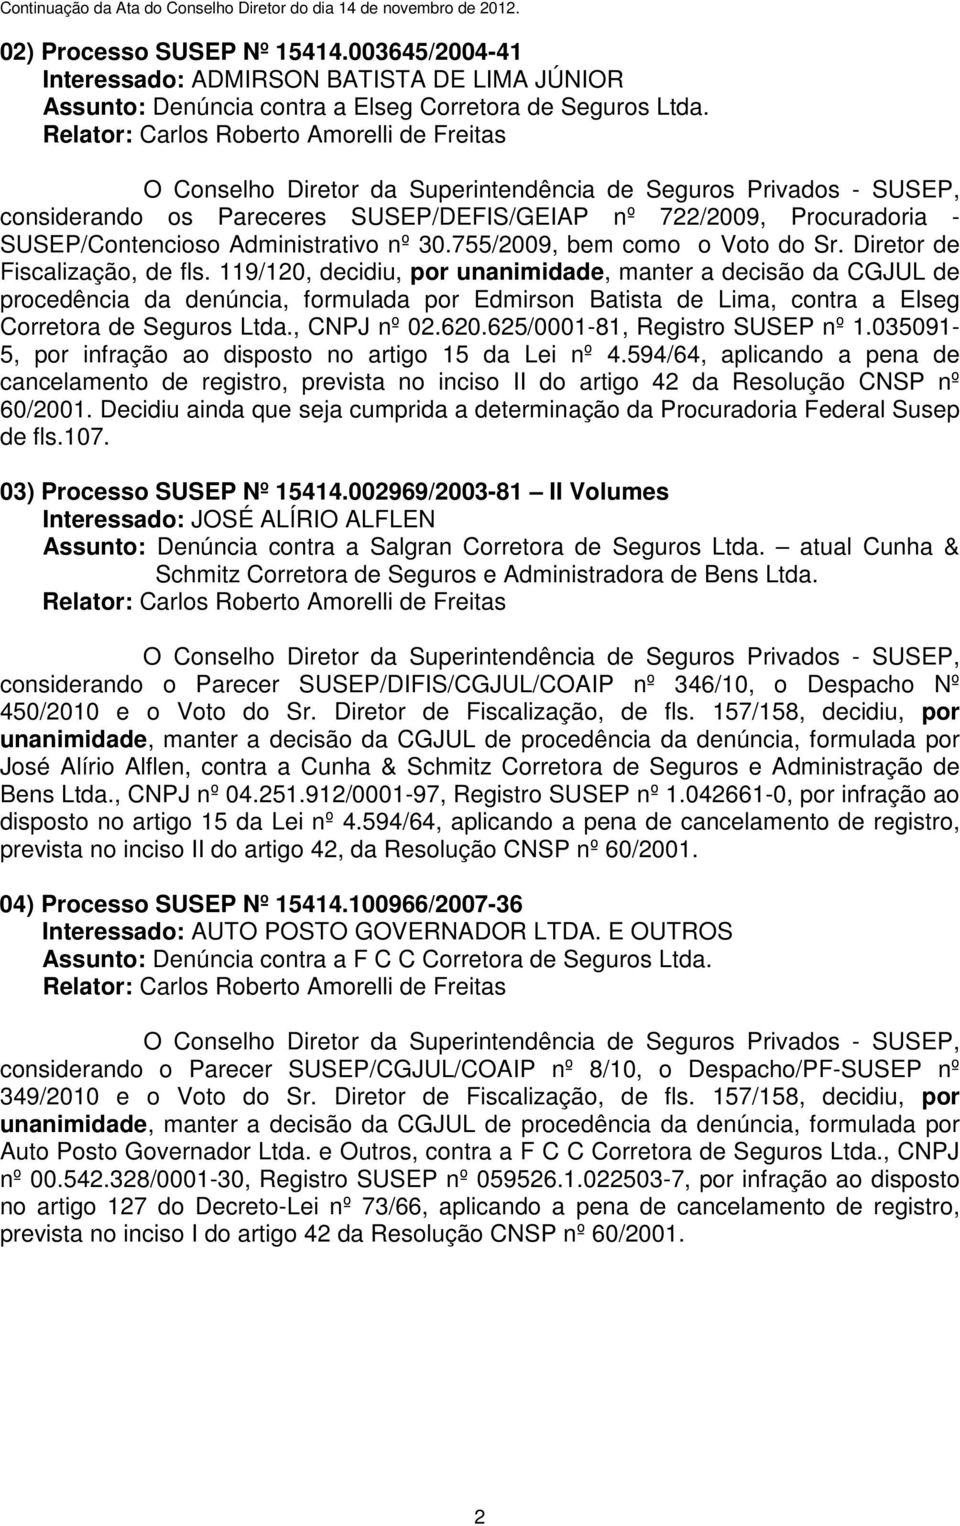 119/120, decidiu, por unanimidade, manter a decisão da CGJUL de procedência da denúncia, formulada por Edmirson Batista de Lima, contra a Elseg Corretora de Seguros Ltda., CNPJ nº 02.620.